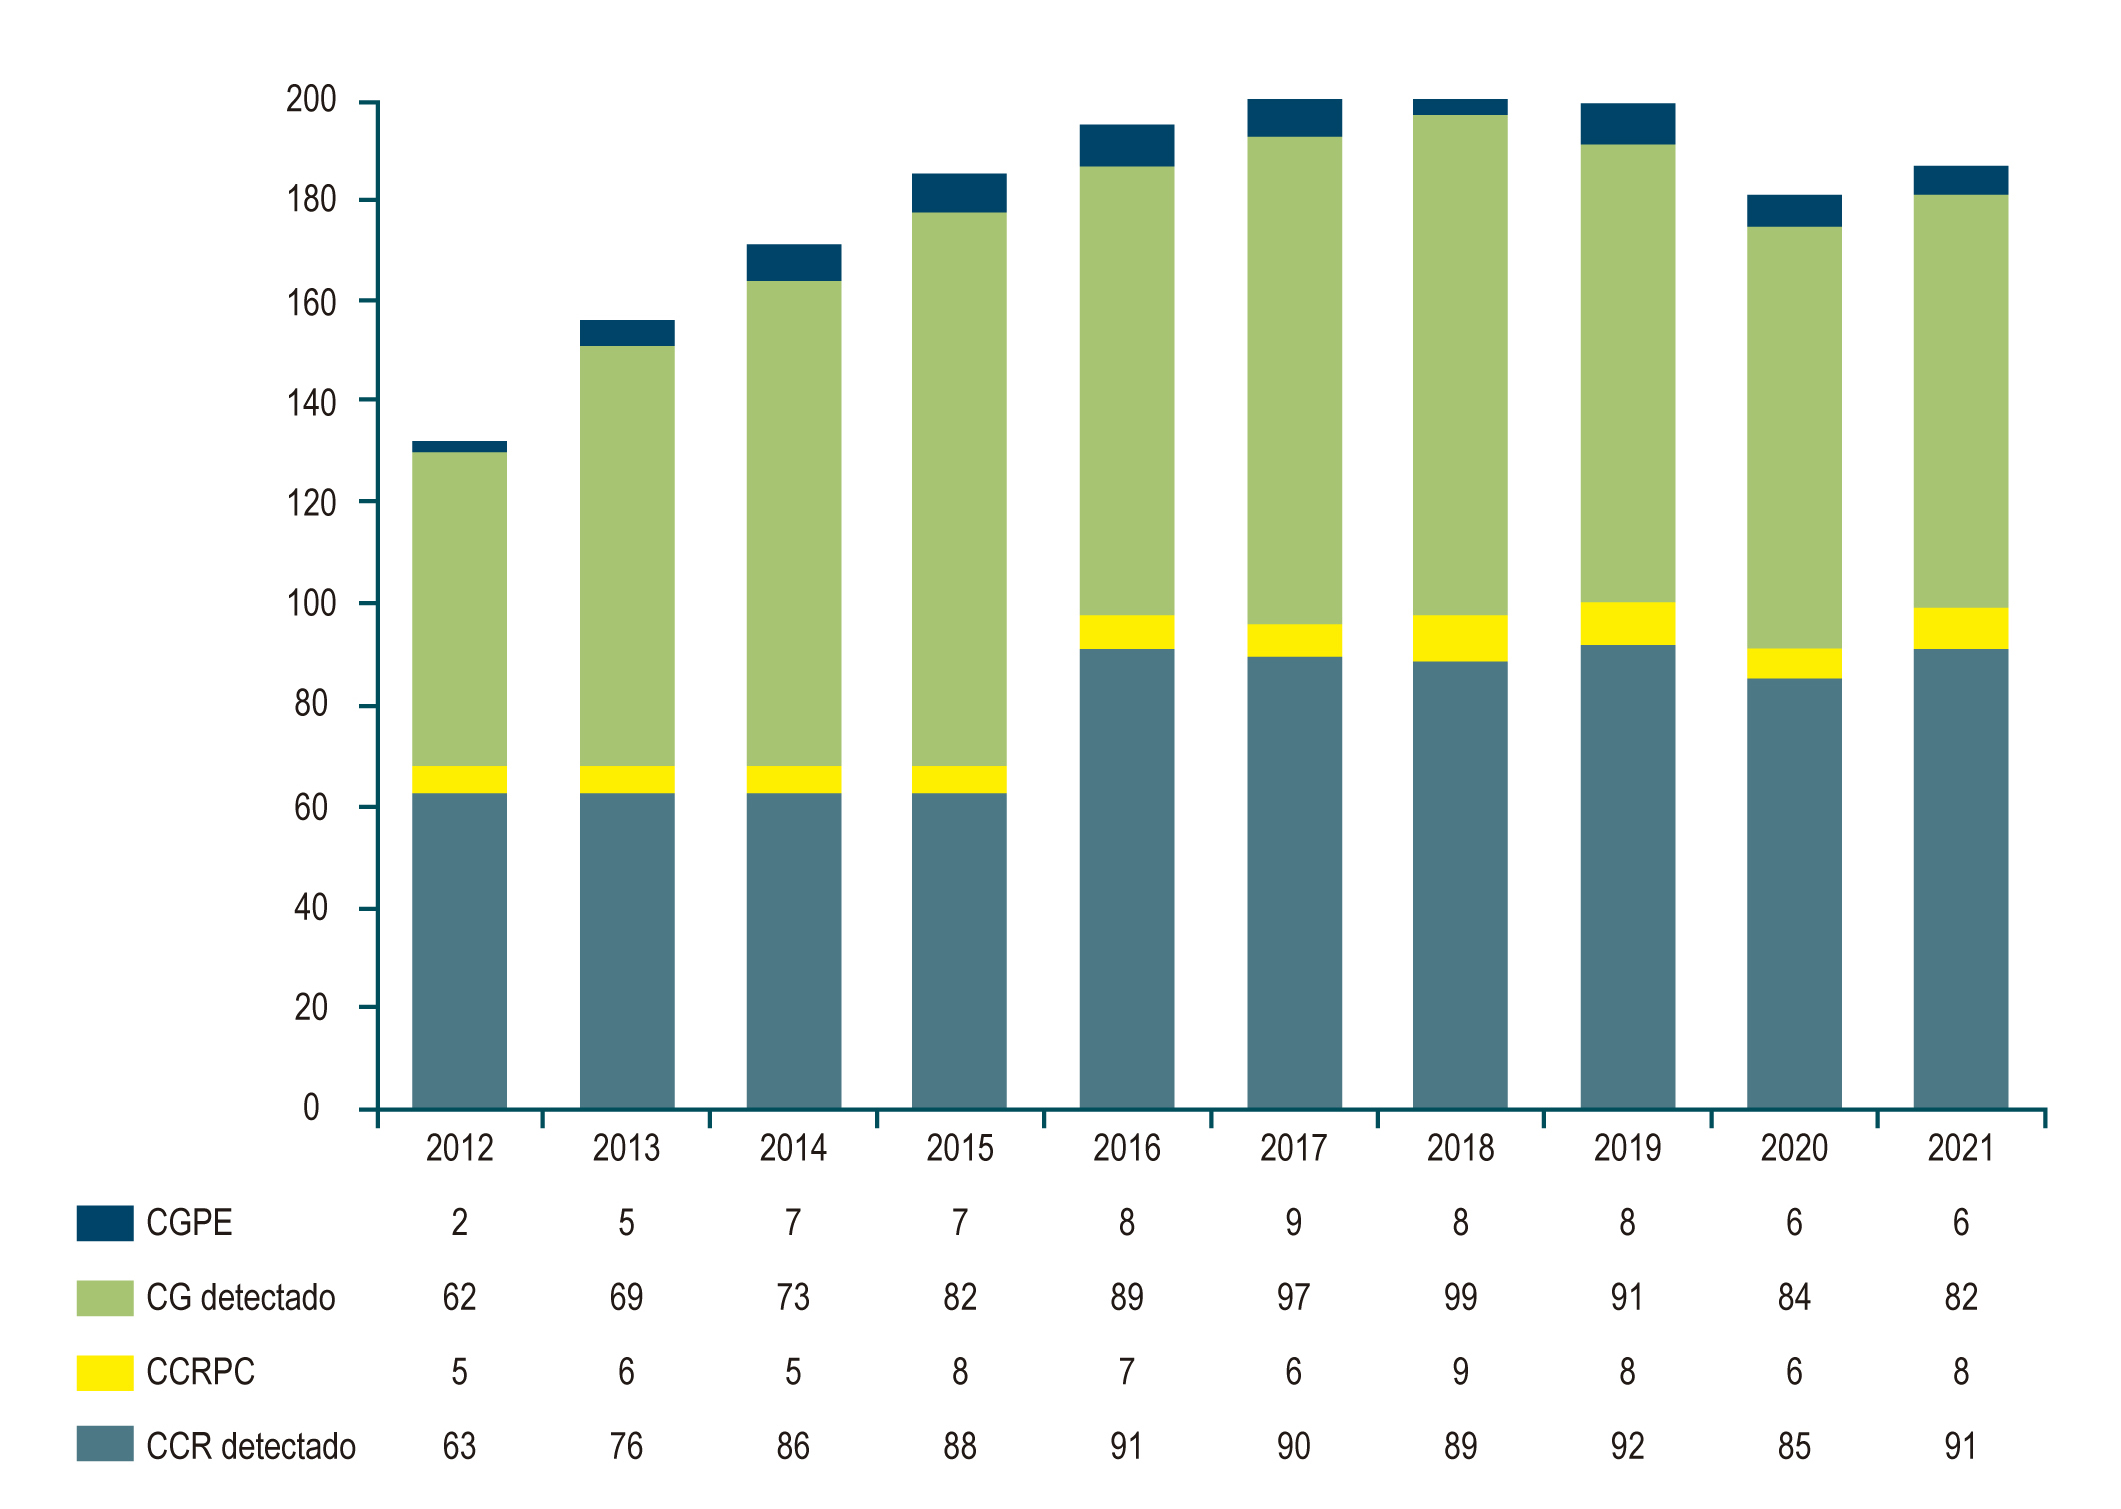 Figura 1. Cantidad de casos detectados de CG/CGPE y CCR/CCRPC entre 2012 y 2021. Elaborada por los autores.